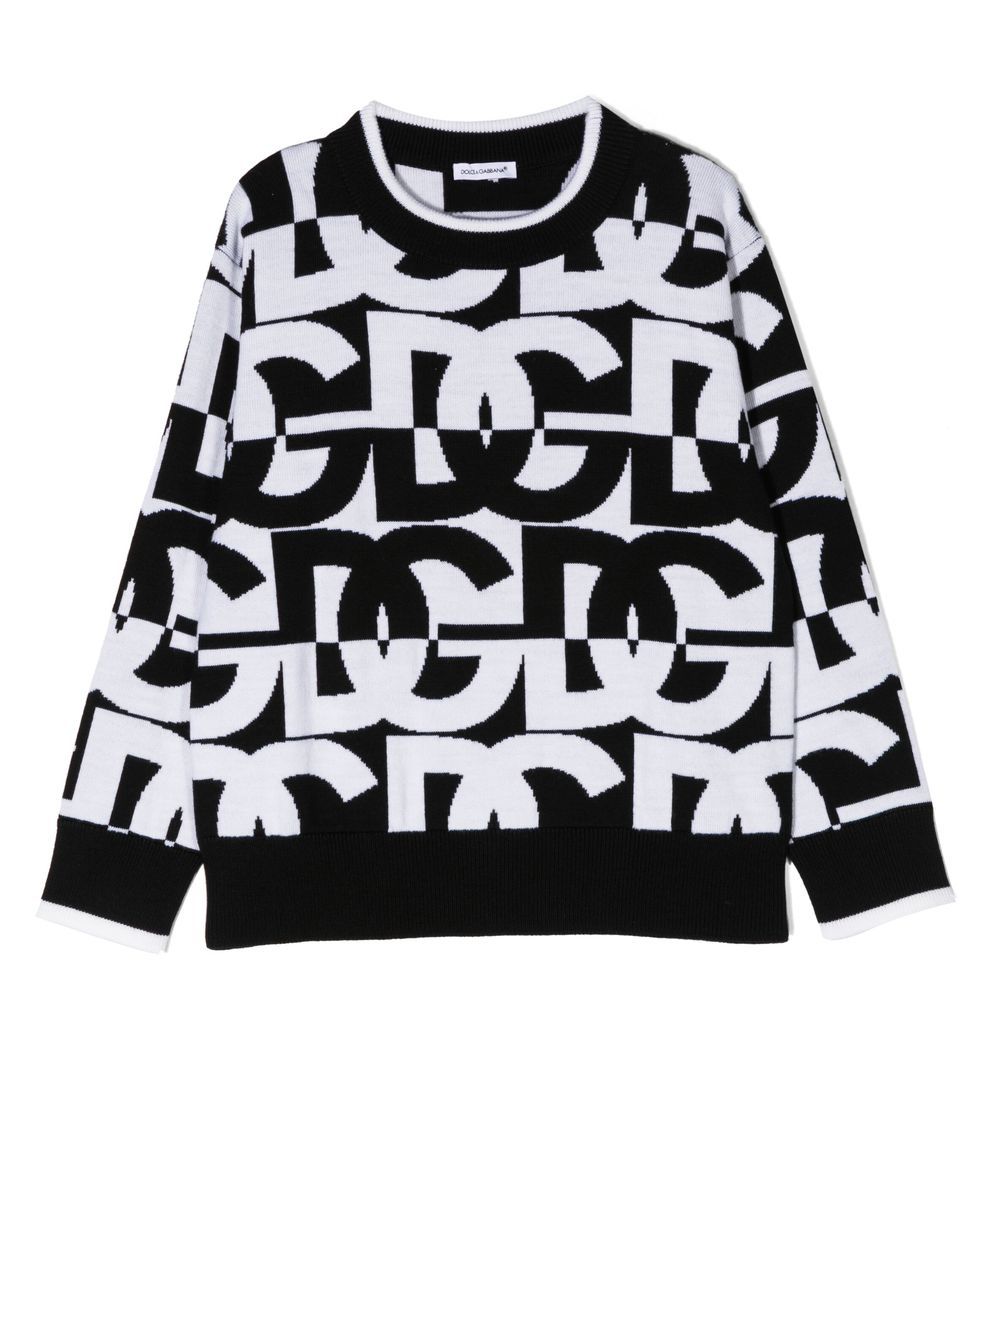 Maglione bianco e nero per bambio con logo